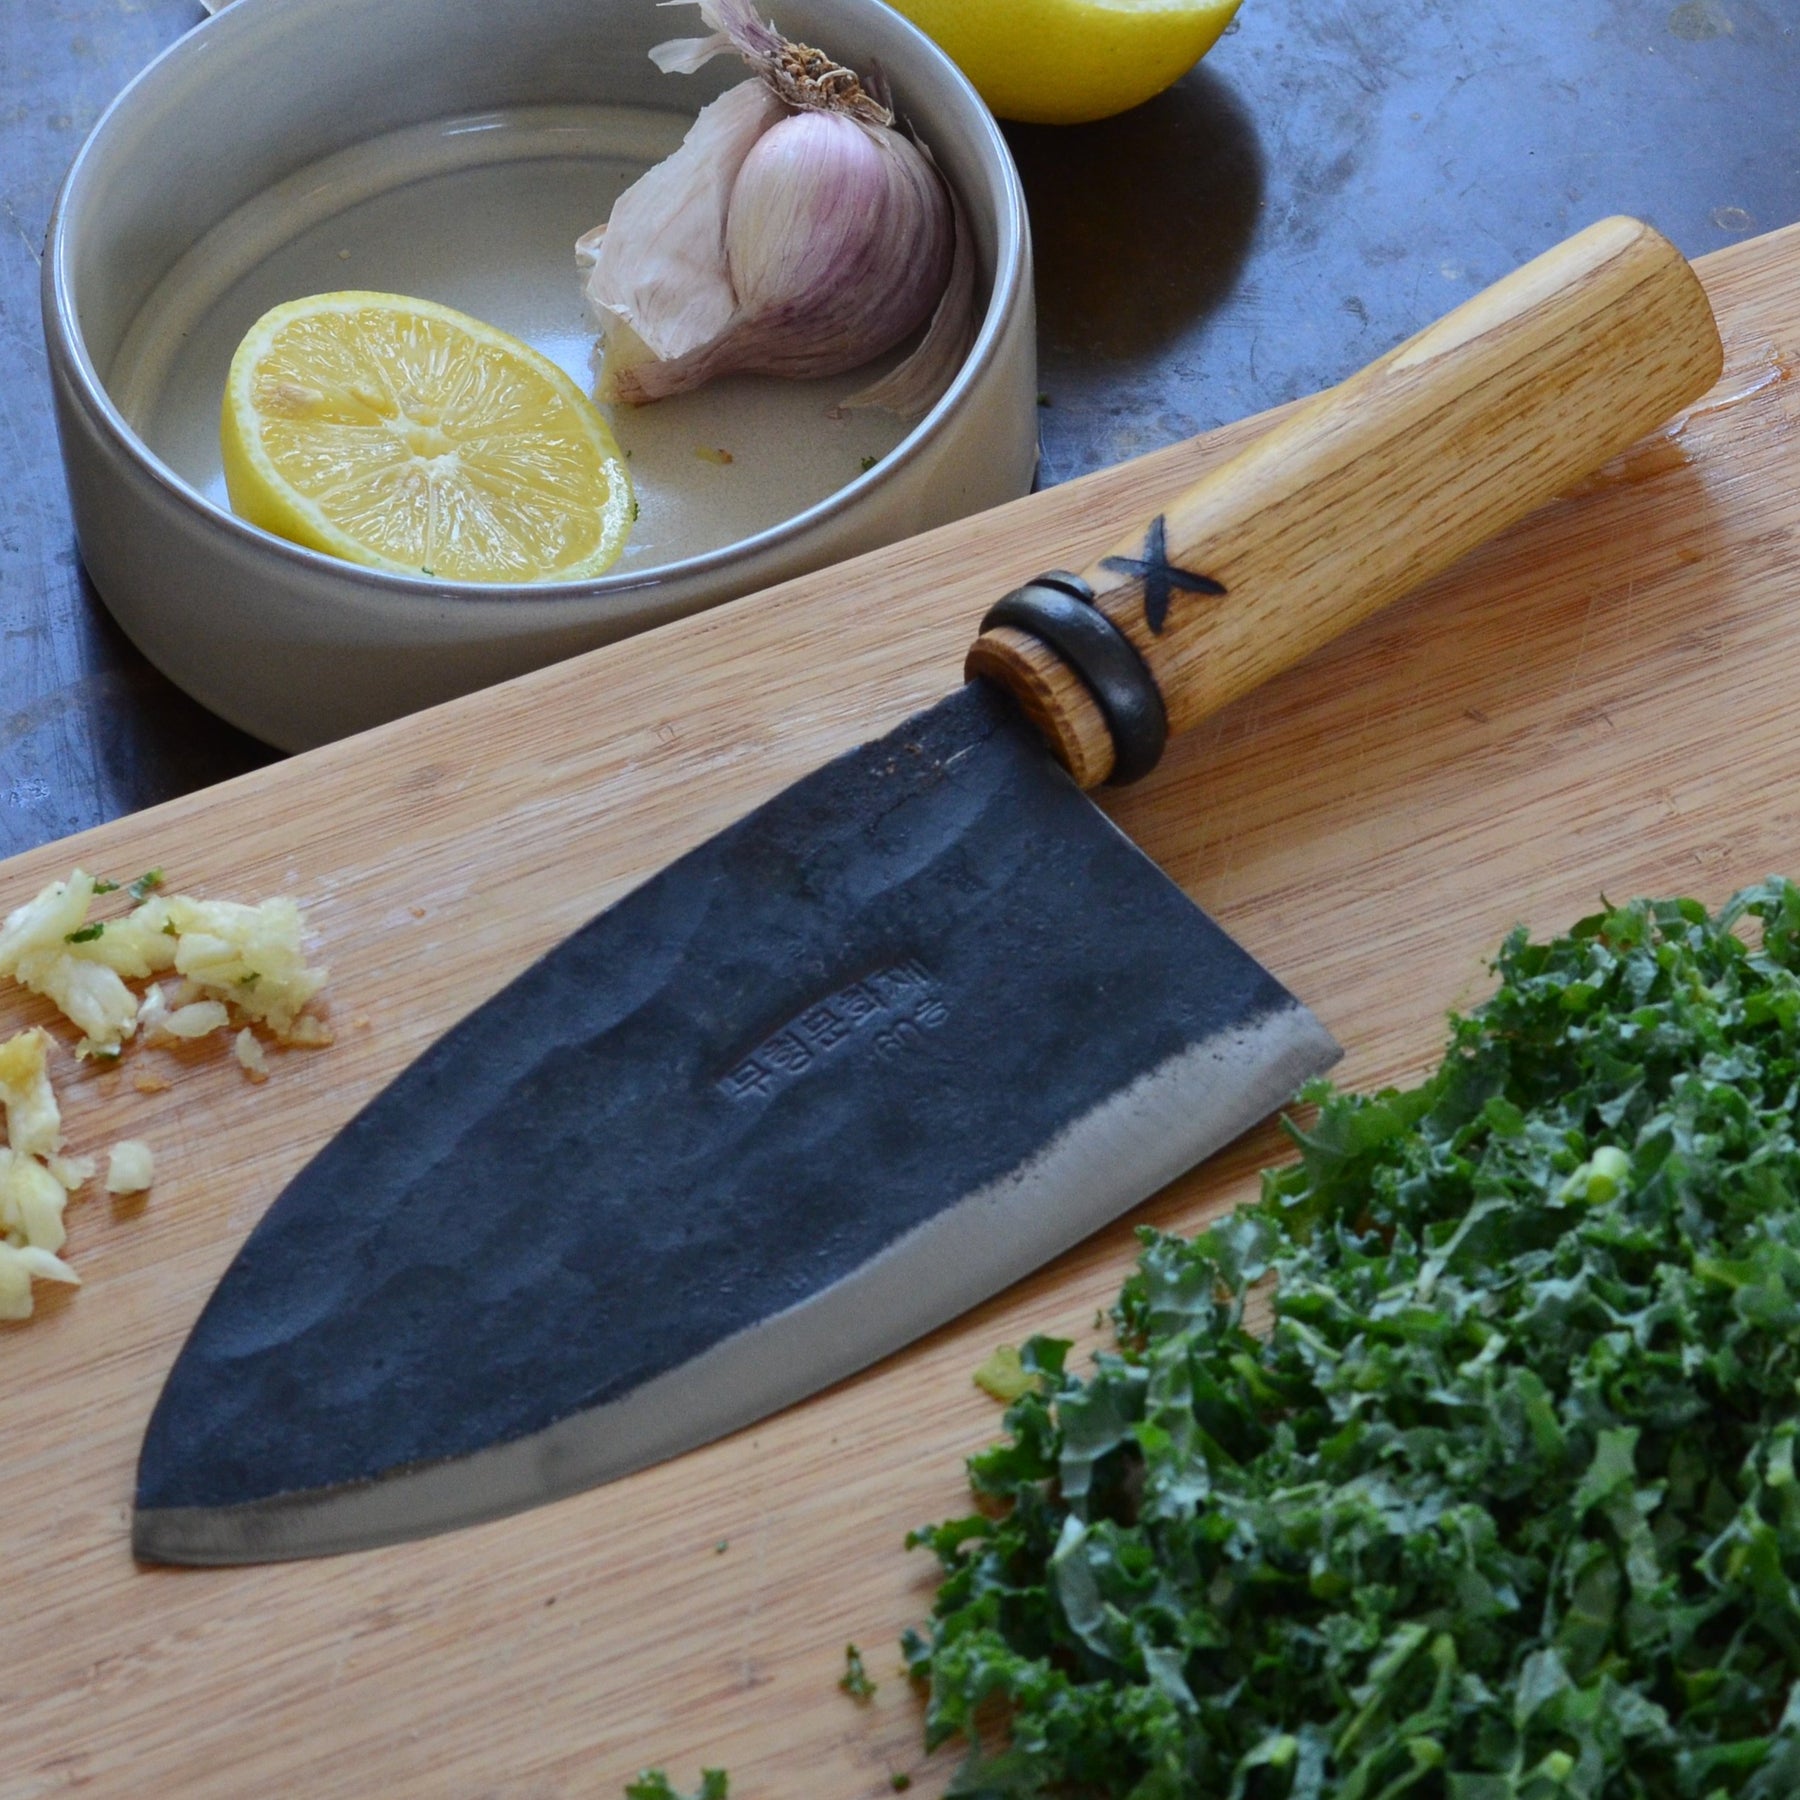 Handmade Korean Chefs Knife